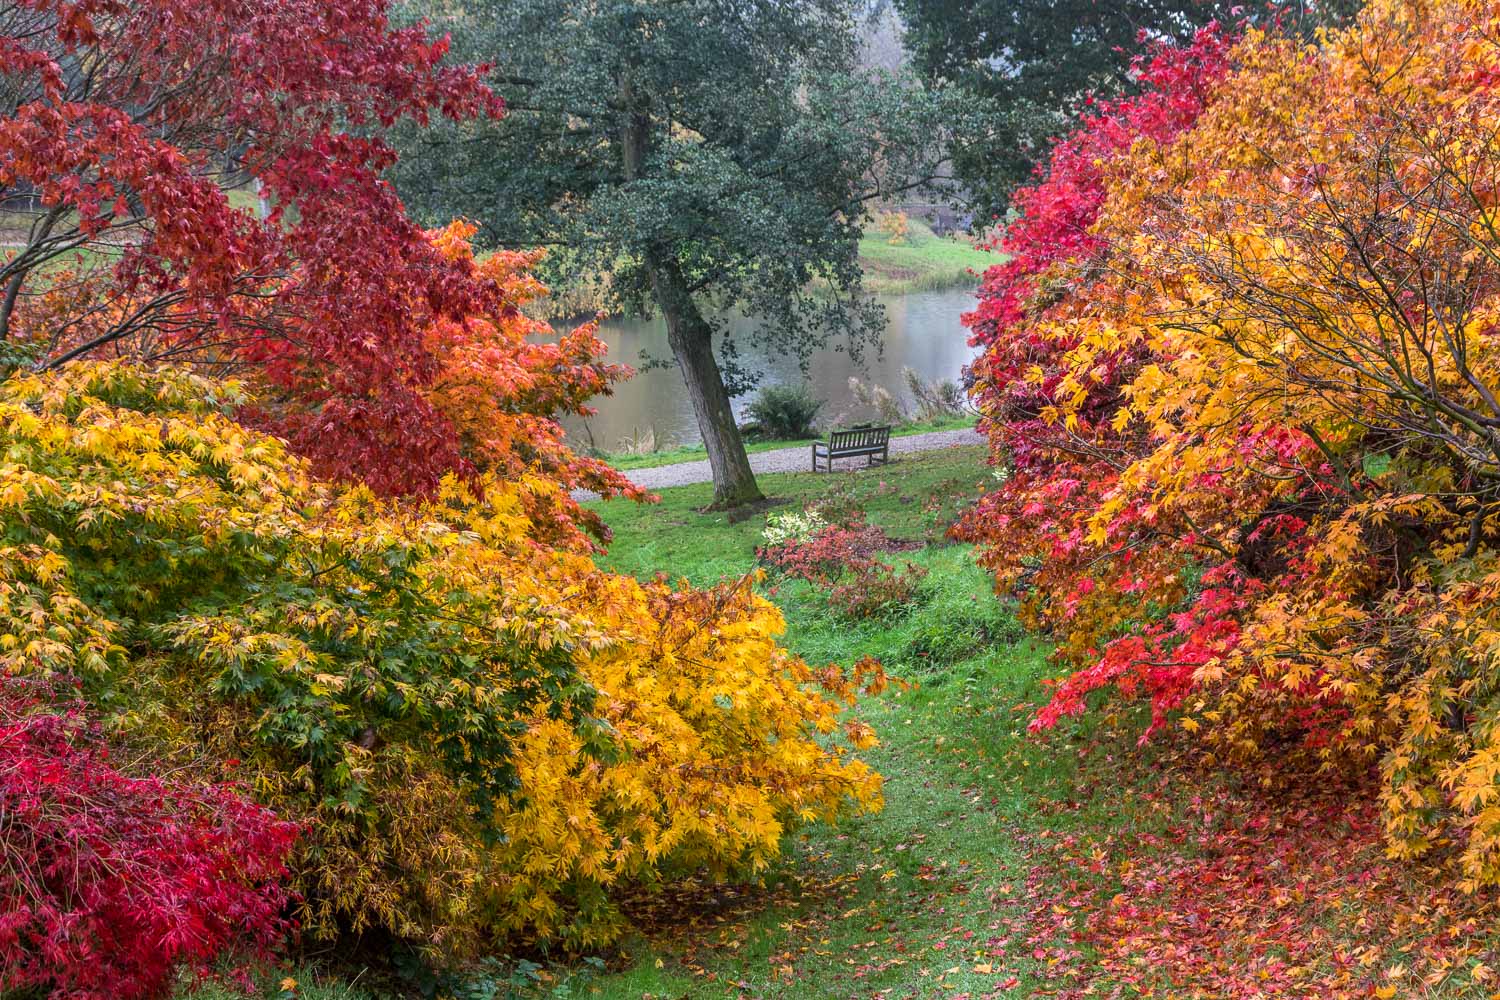 Yorkshire Arboretum